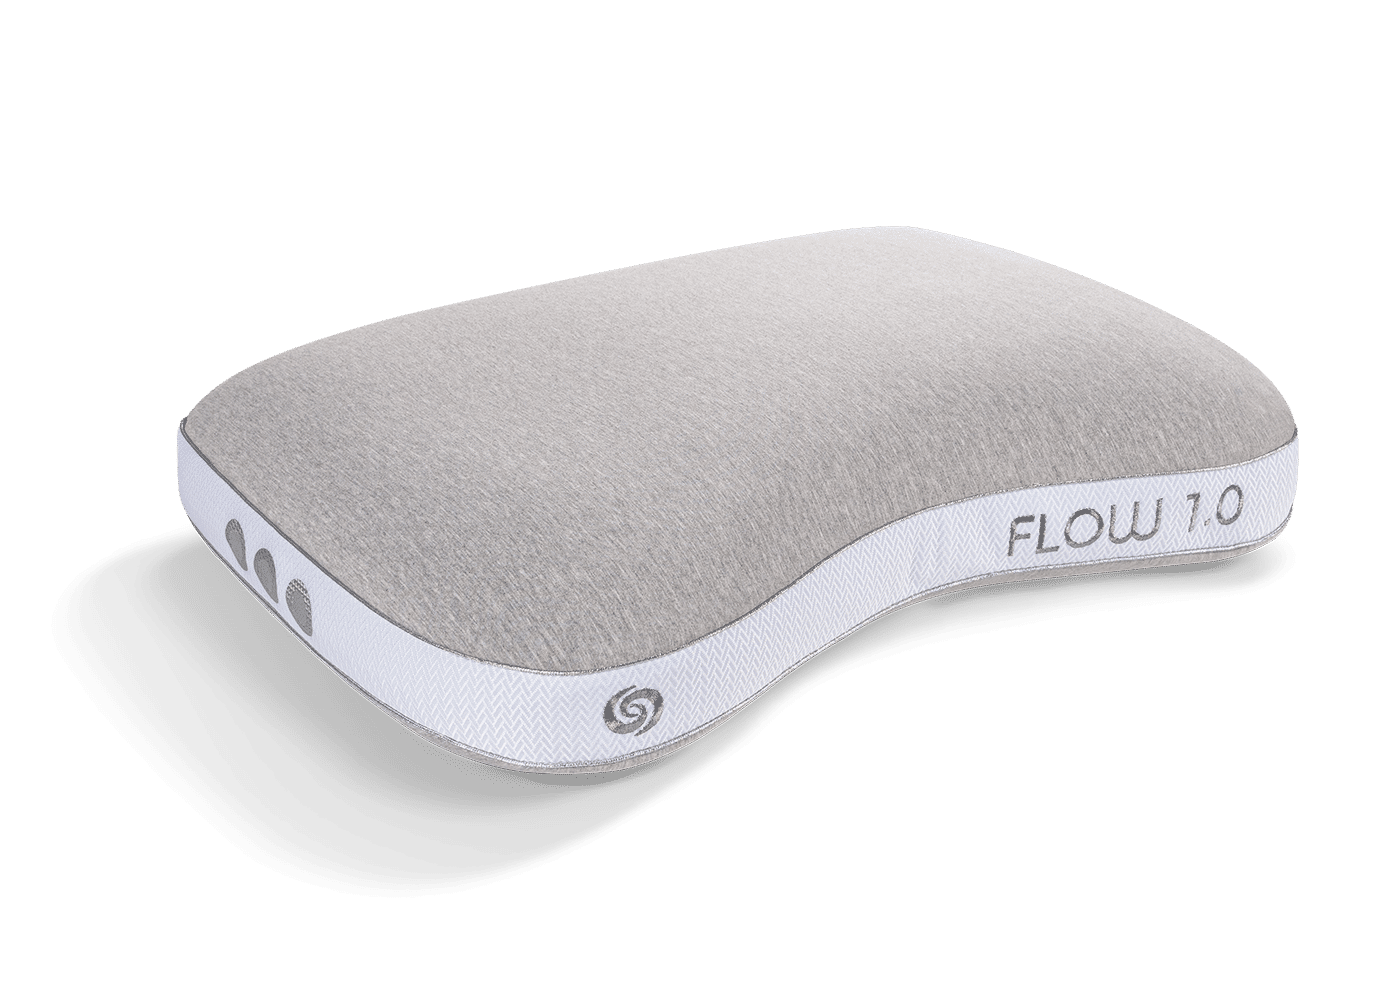 Flow Cuddle Pillow 1.0